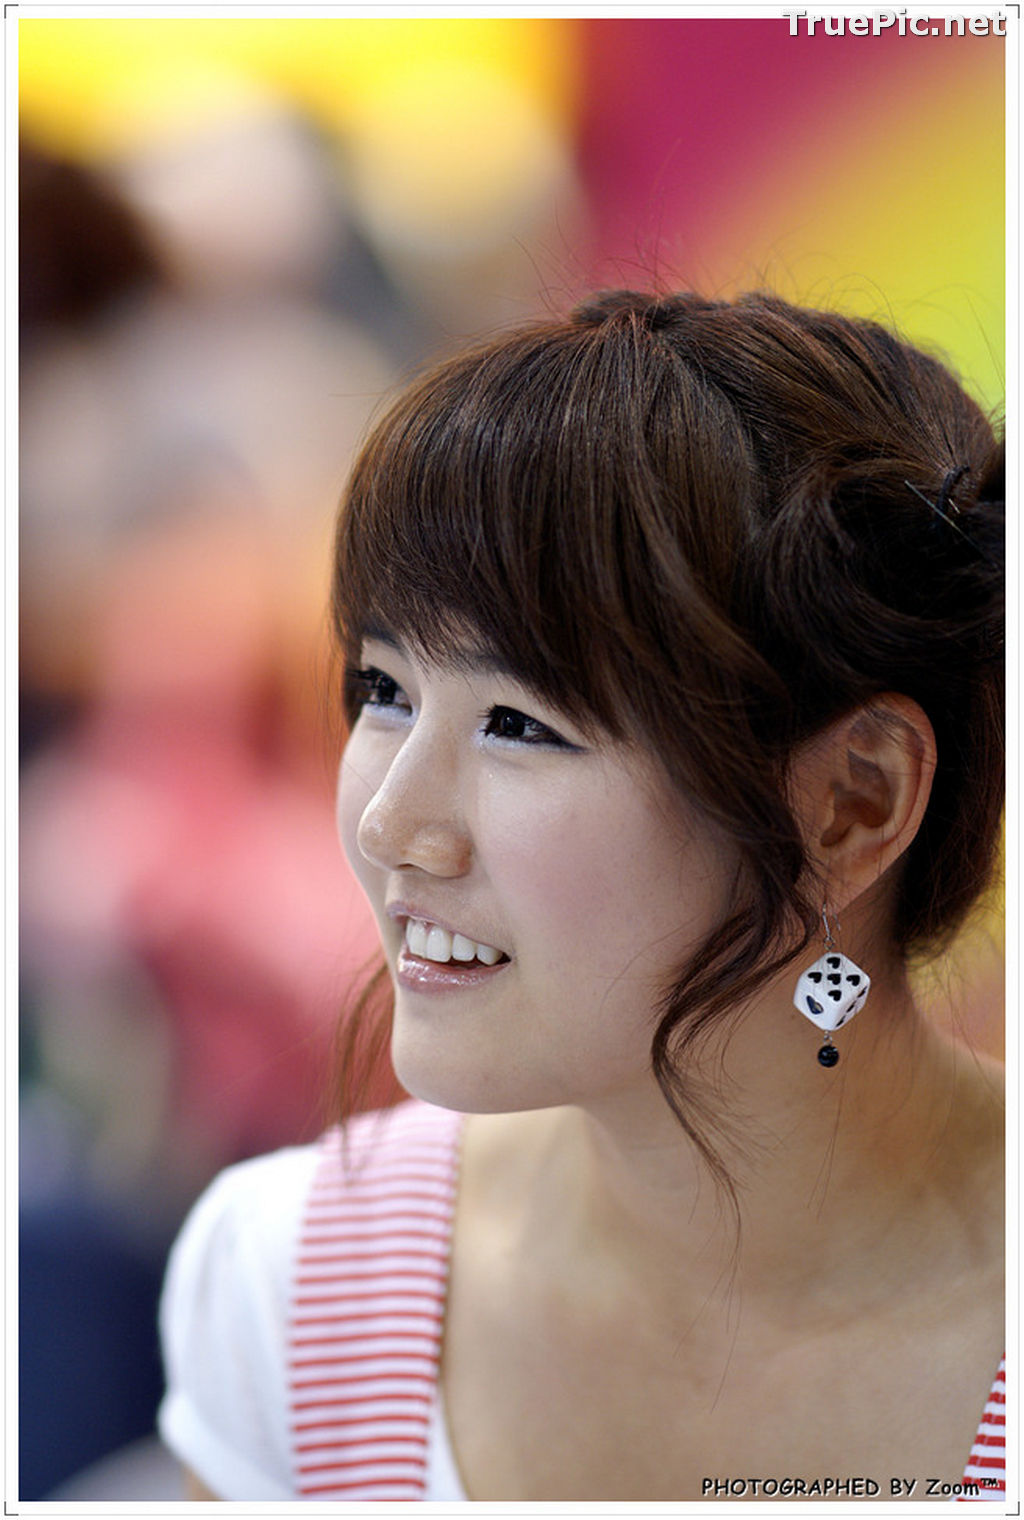 Image Best Beautiful Images Of Korean Racing Queen Han Ga Eun #3 - TruePic.net - Picture-66